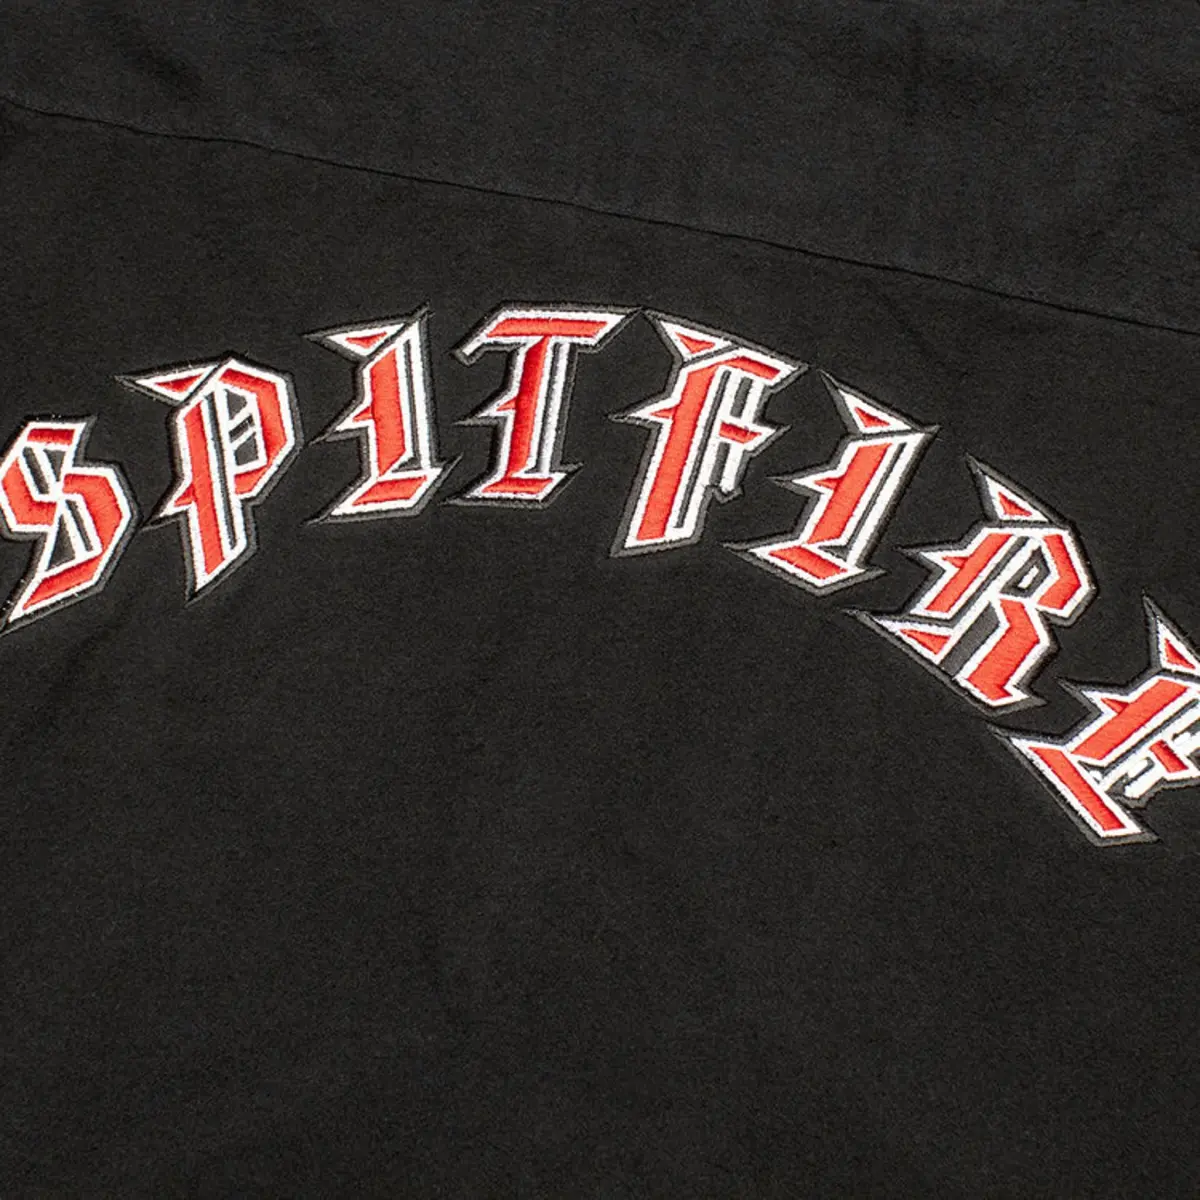 spitfire shirt old emb flanel black